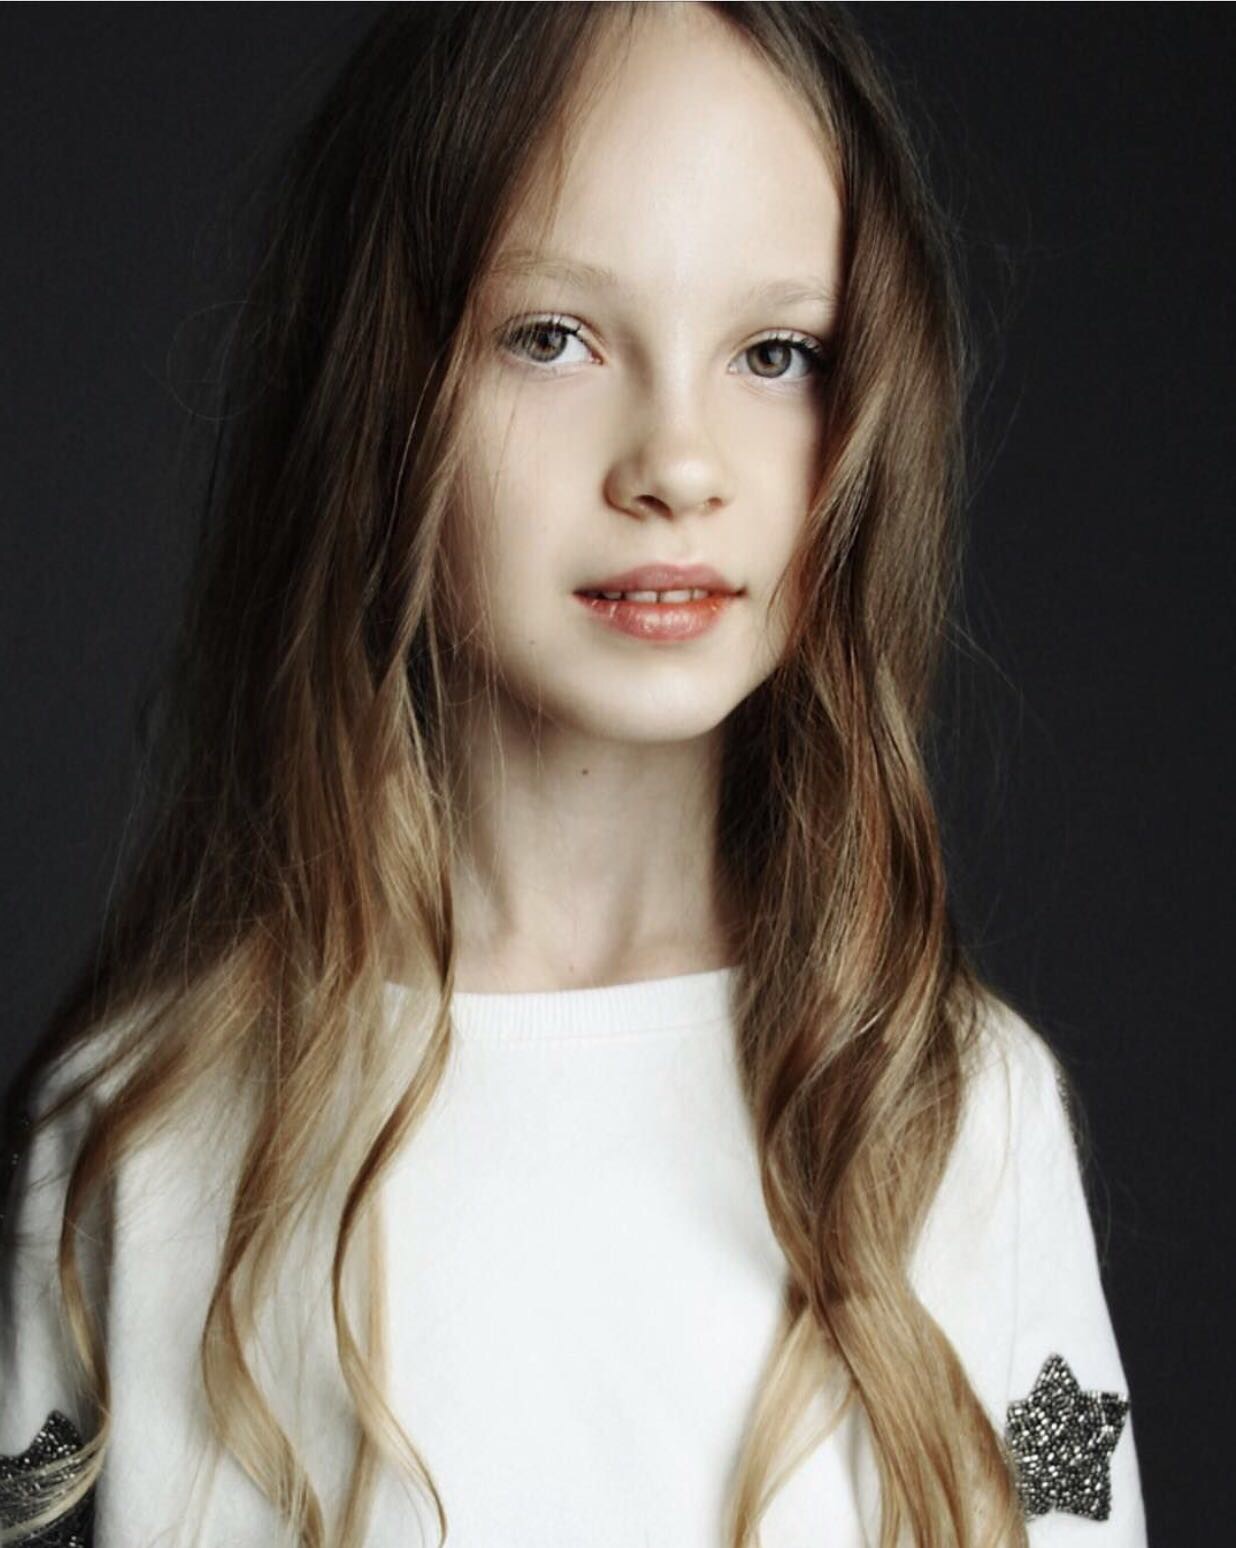 Лика Метлякова - аккредитованная модель для участия в подиумных показах на Междунродной Детской Неделе моды